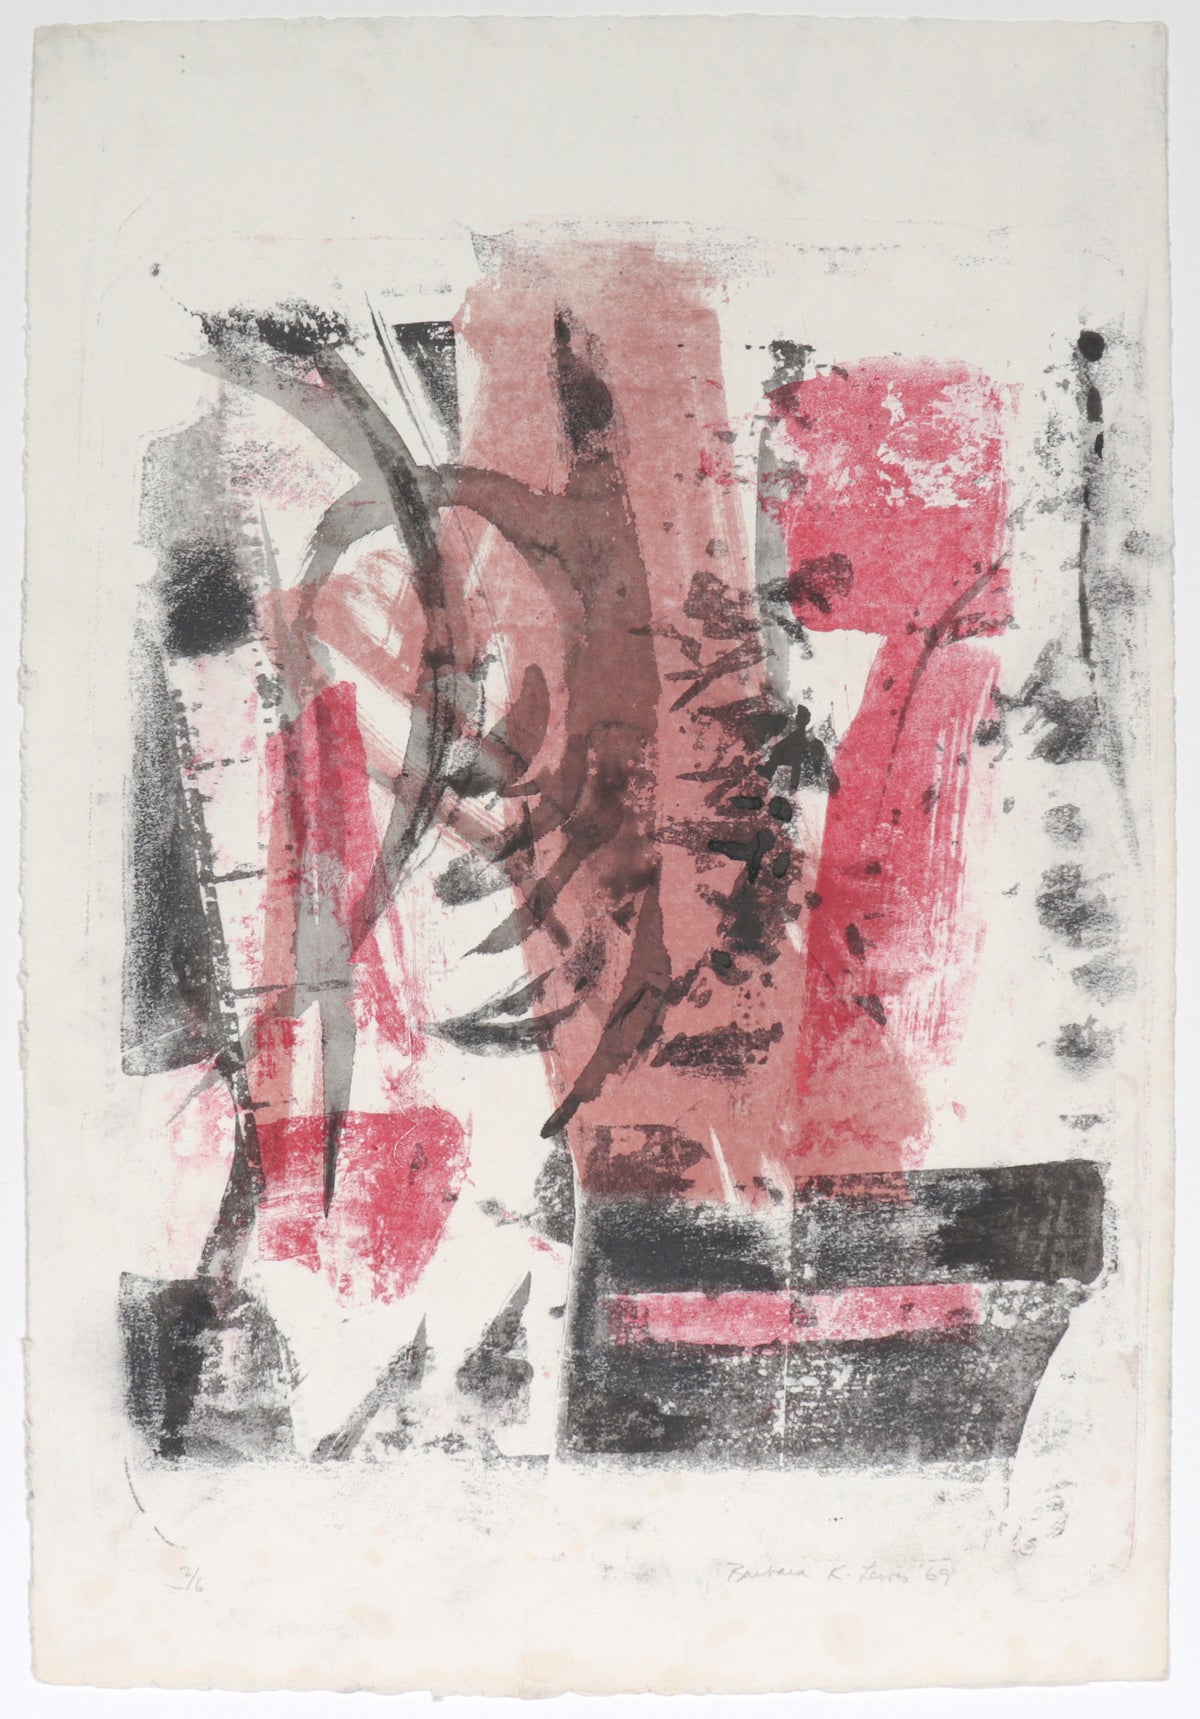 Black &amp; Pink Gestural Abstract&lt;br&gt;1969 Mixed-Media on Paper&lt;br&gt;&lt;br&gt;#C4468